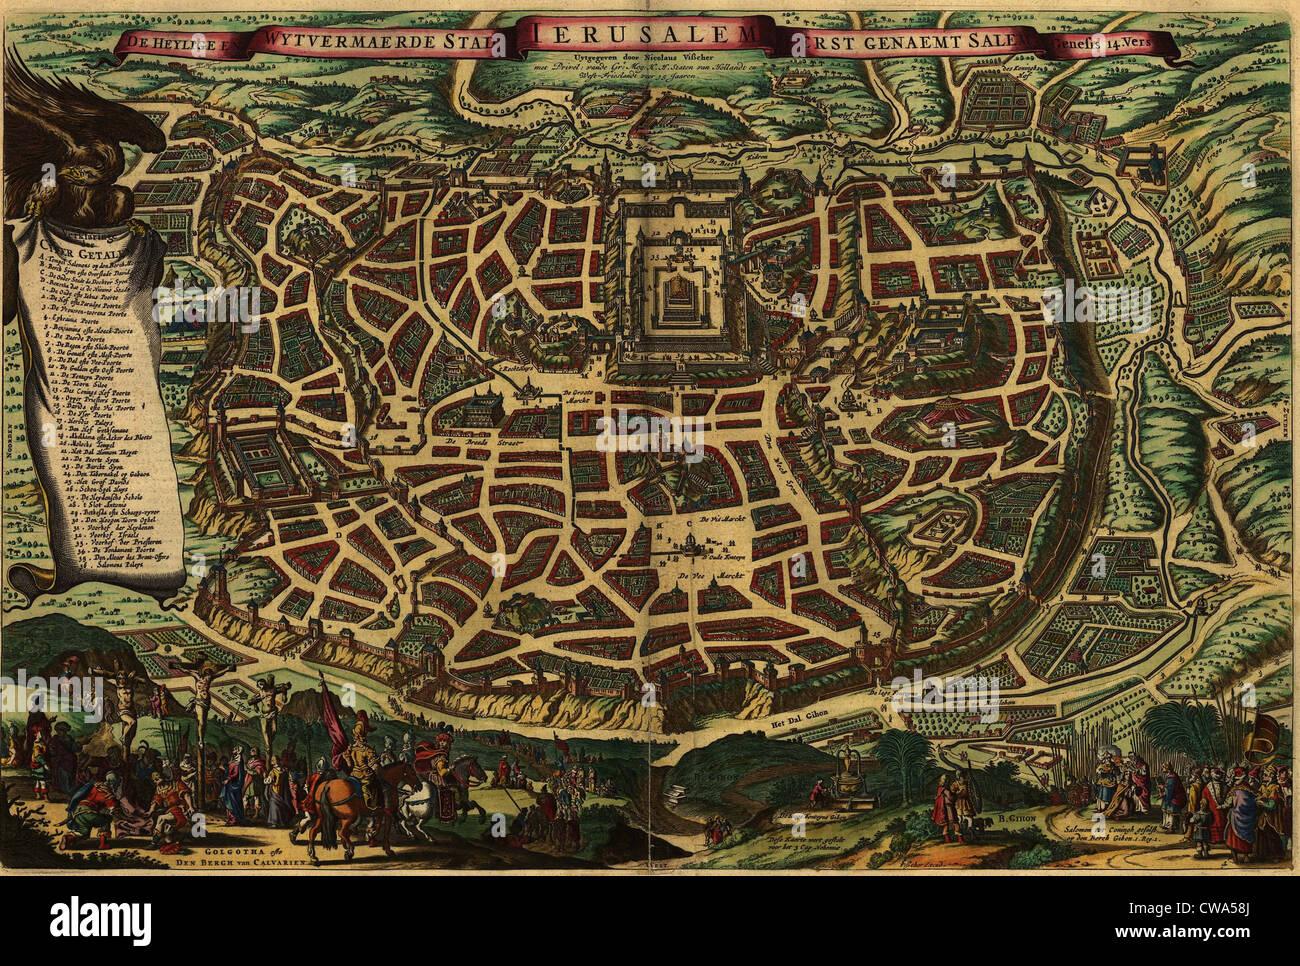 Mappa immaginato dal 1650, raffiguranti Gerusalemme come esso esisteva in epoca romana. Sezione inferiore mostra la crocifissione del Cristo e il Foto Stock